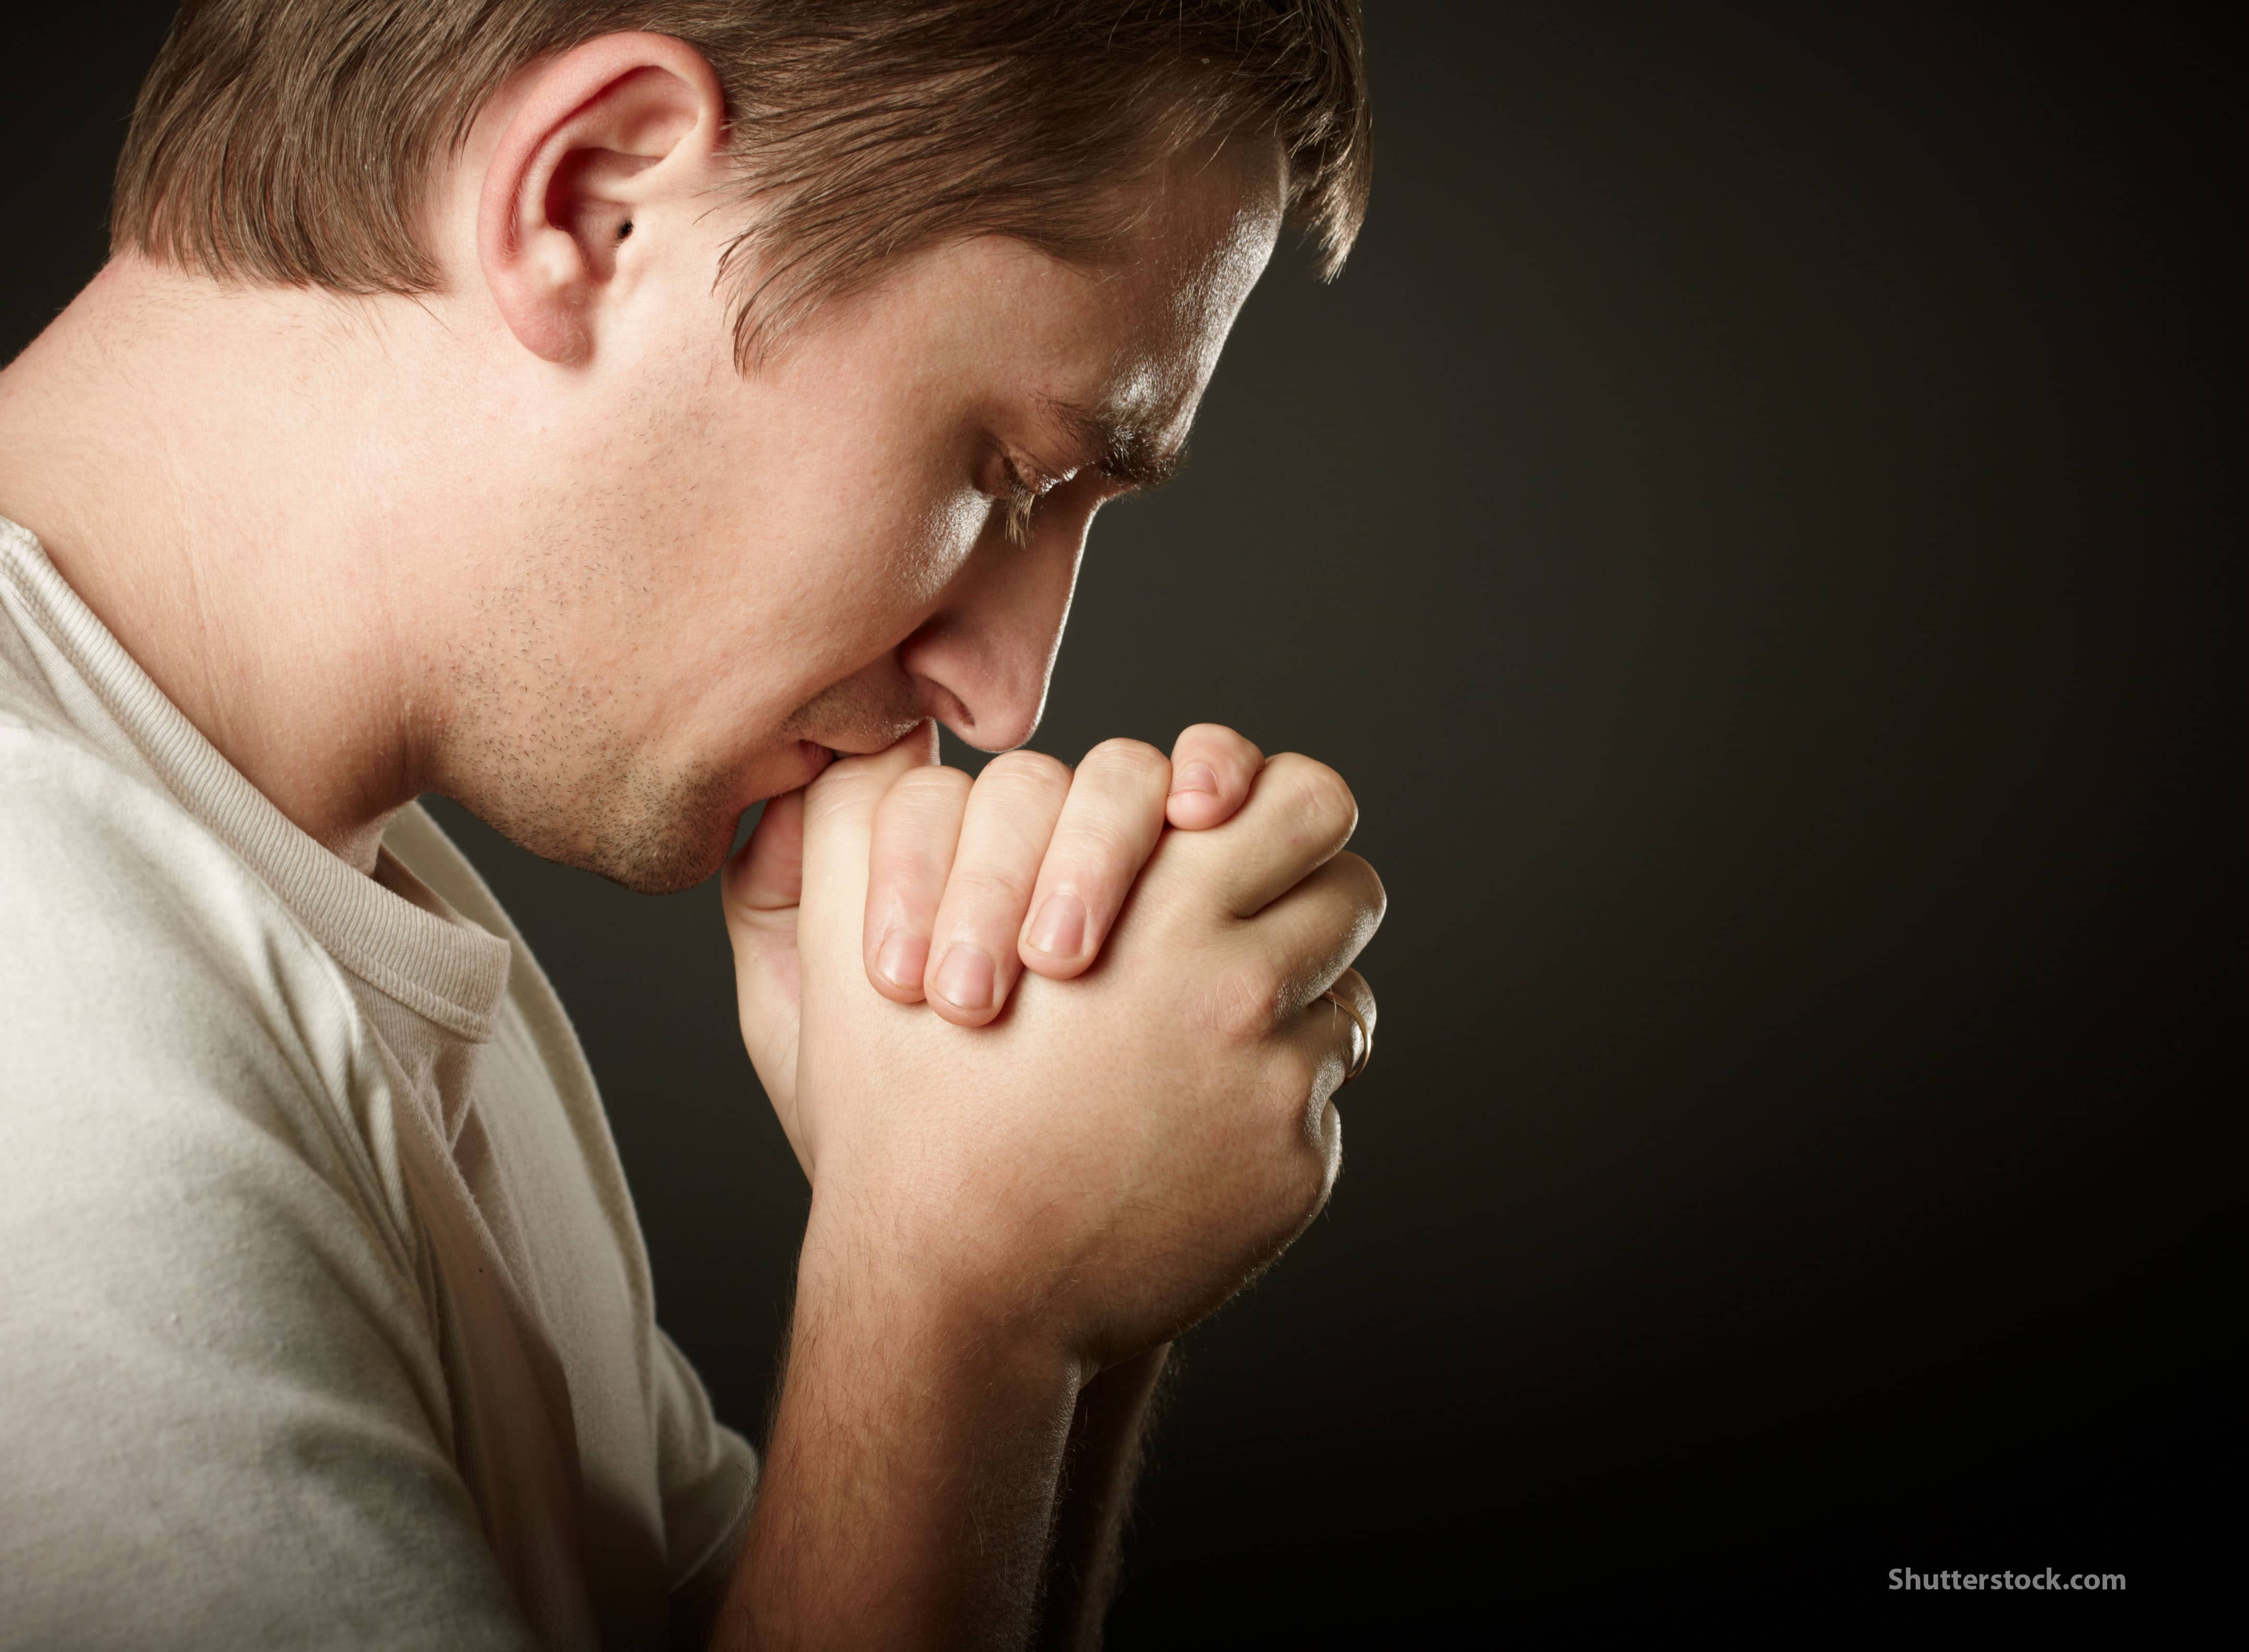 Прощение 12. Человек молится. Парень молится. Человек молится Богу. Мужчина молится Богу.